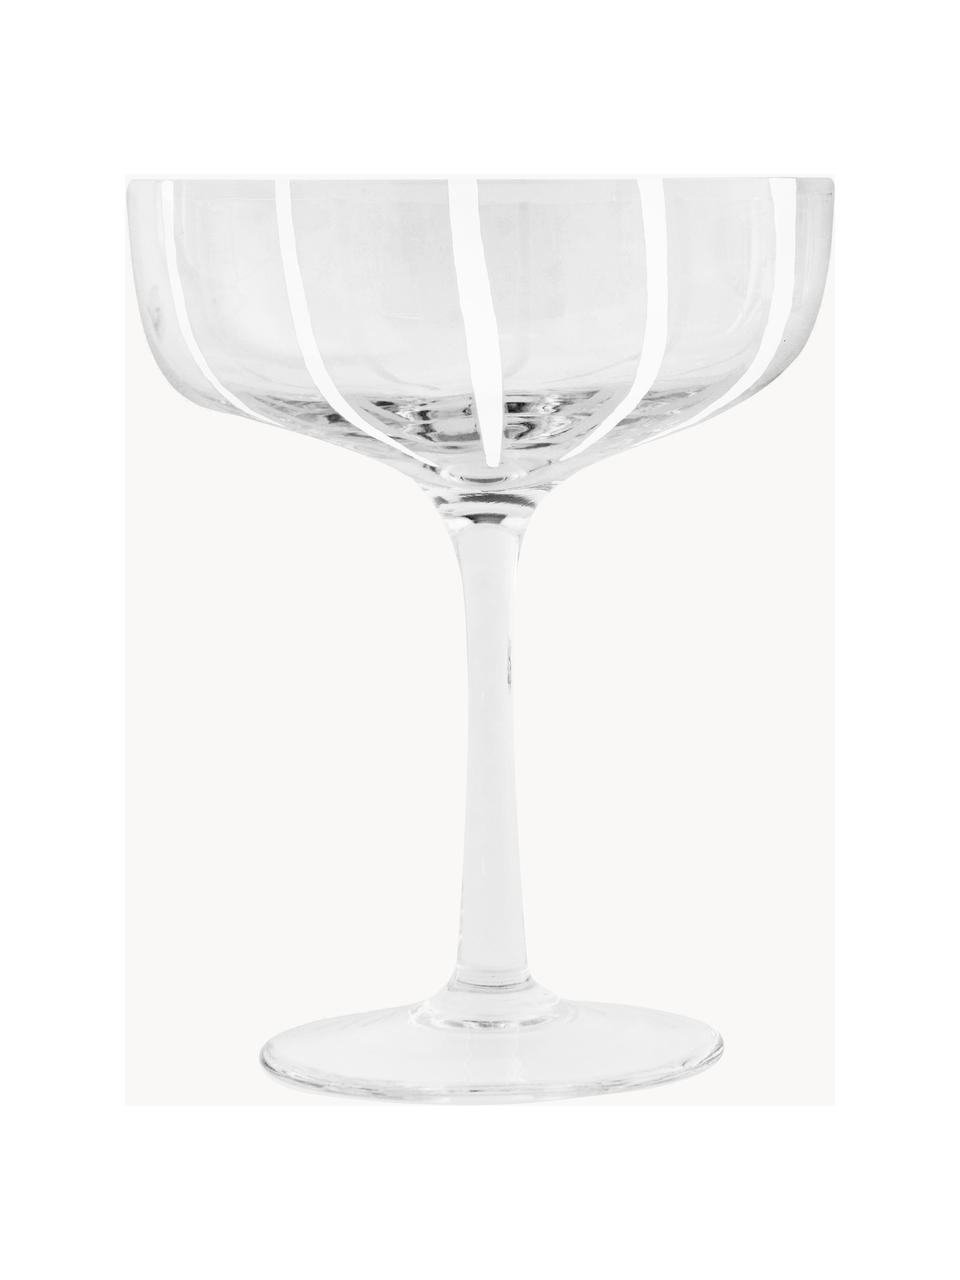 Mundgeblasene Champagnerschalen Mizu, 2 Stück, Glas, Transparent, Weiß, Ø 11 x H 14 cm, 230 ml